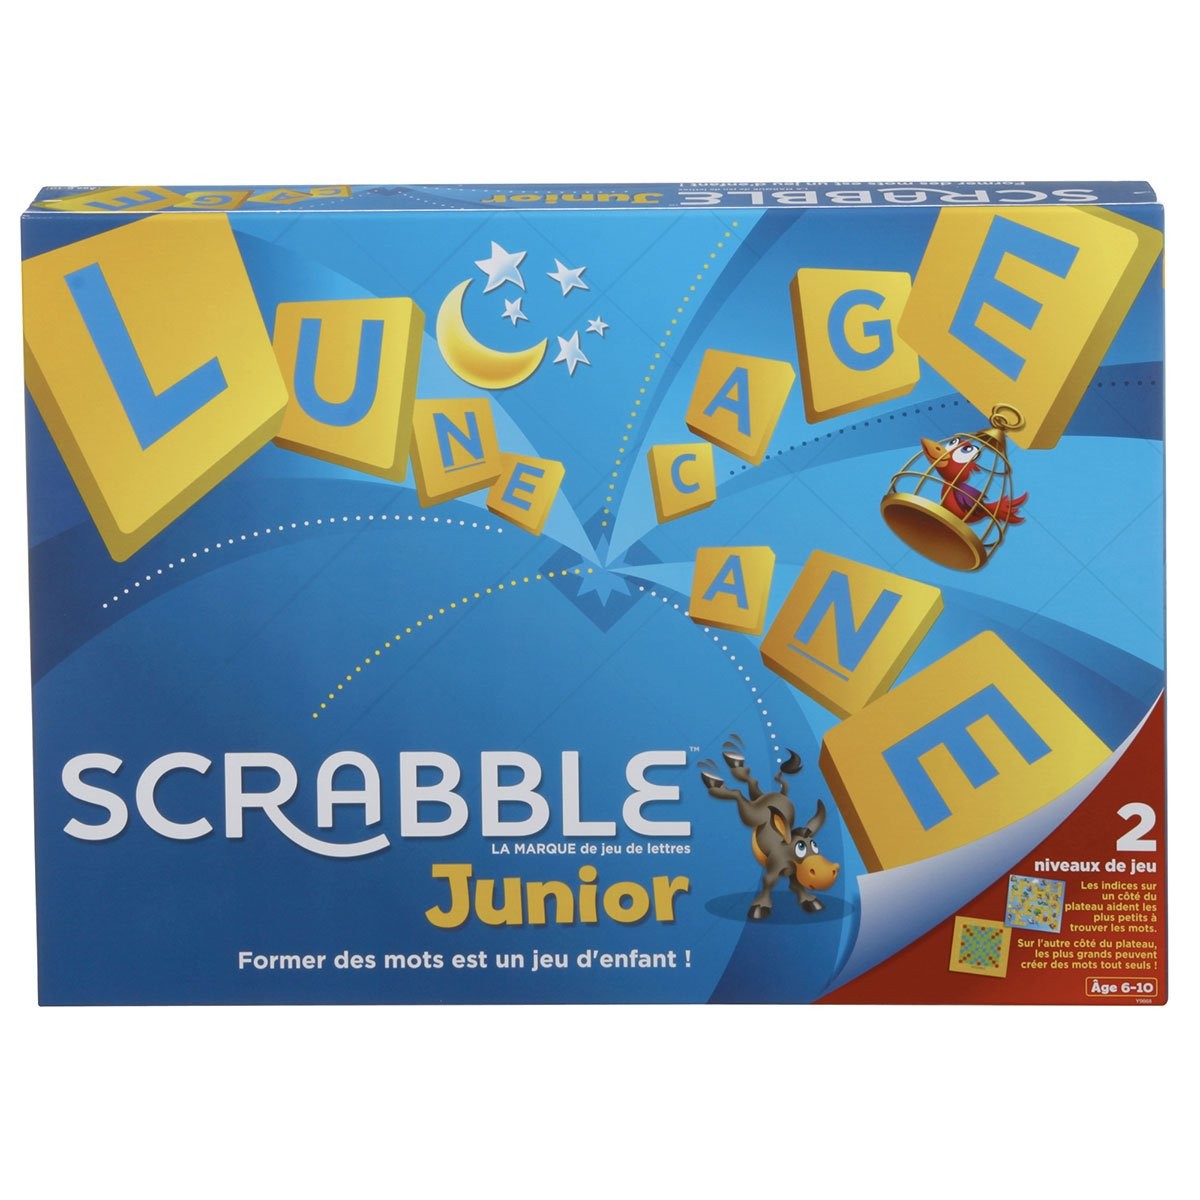 Scrabble de voyage de Luxe - jeu Mattel 2005 - jouets rétro jeux de société  figurines et objets vintage